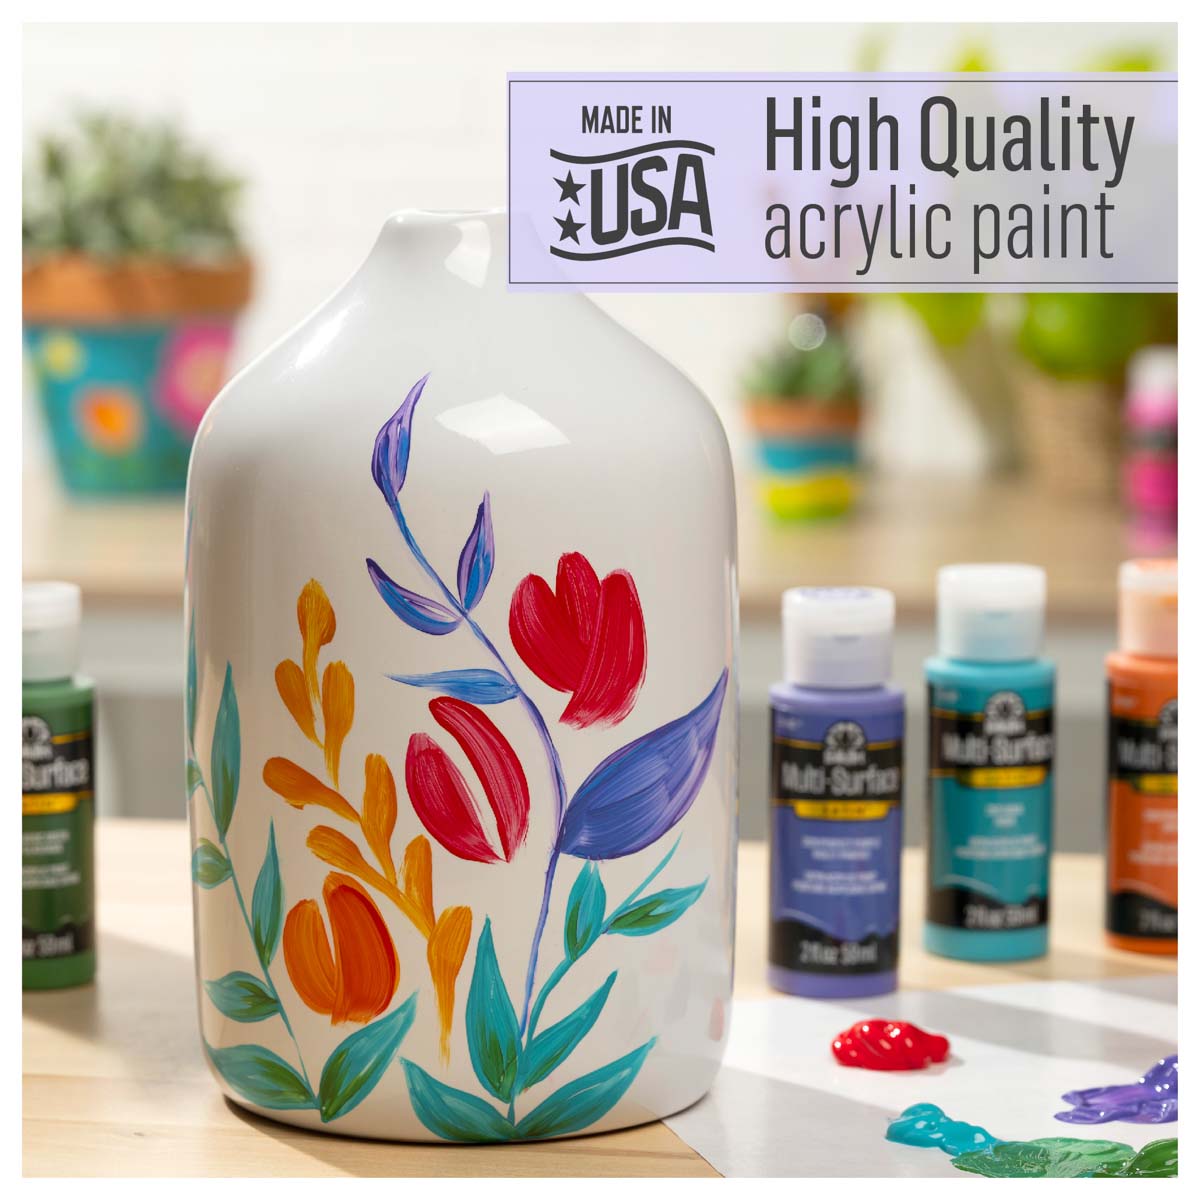 FolkArt ® Multi-Surface Satin Acrylic Paints - Parchment, 2 oz. - 2895